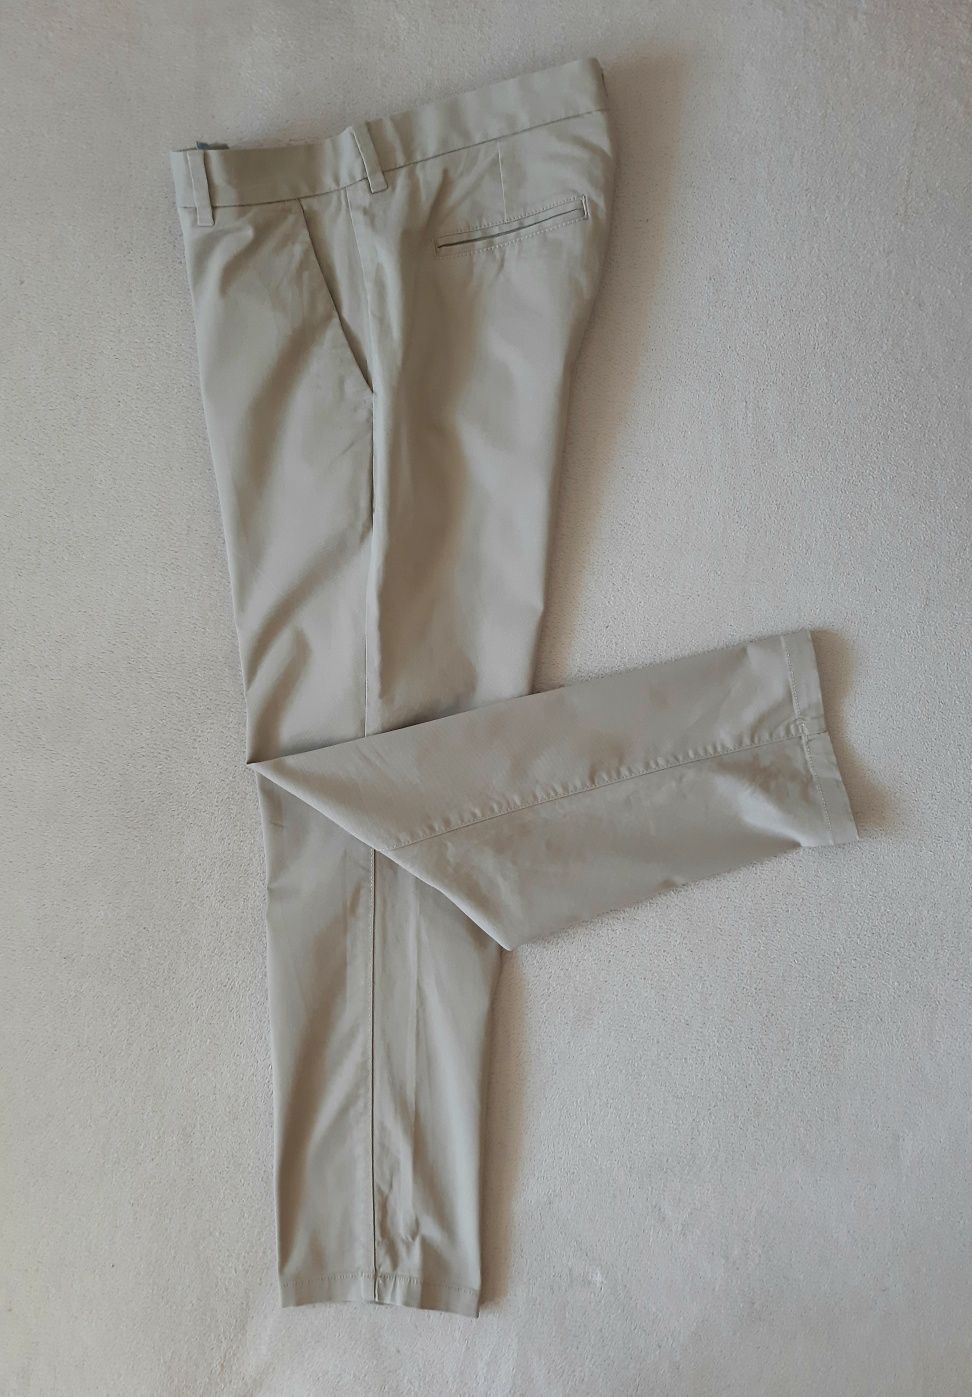 spodnie chino NEXT roz. 32/29 M/L straight styl moda klasyka komfort